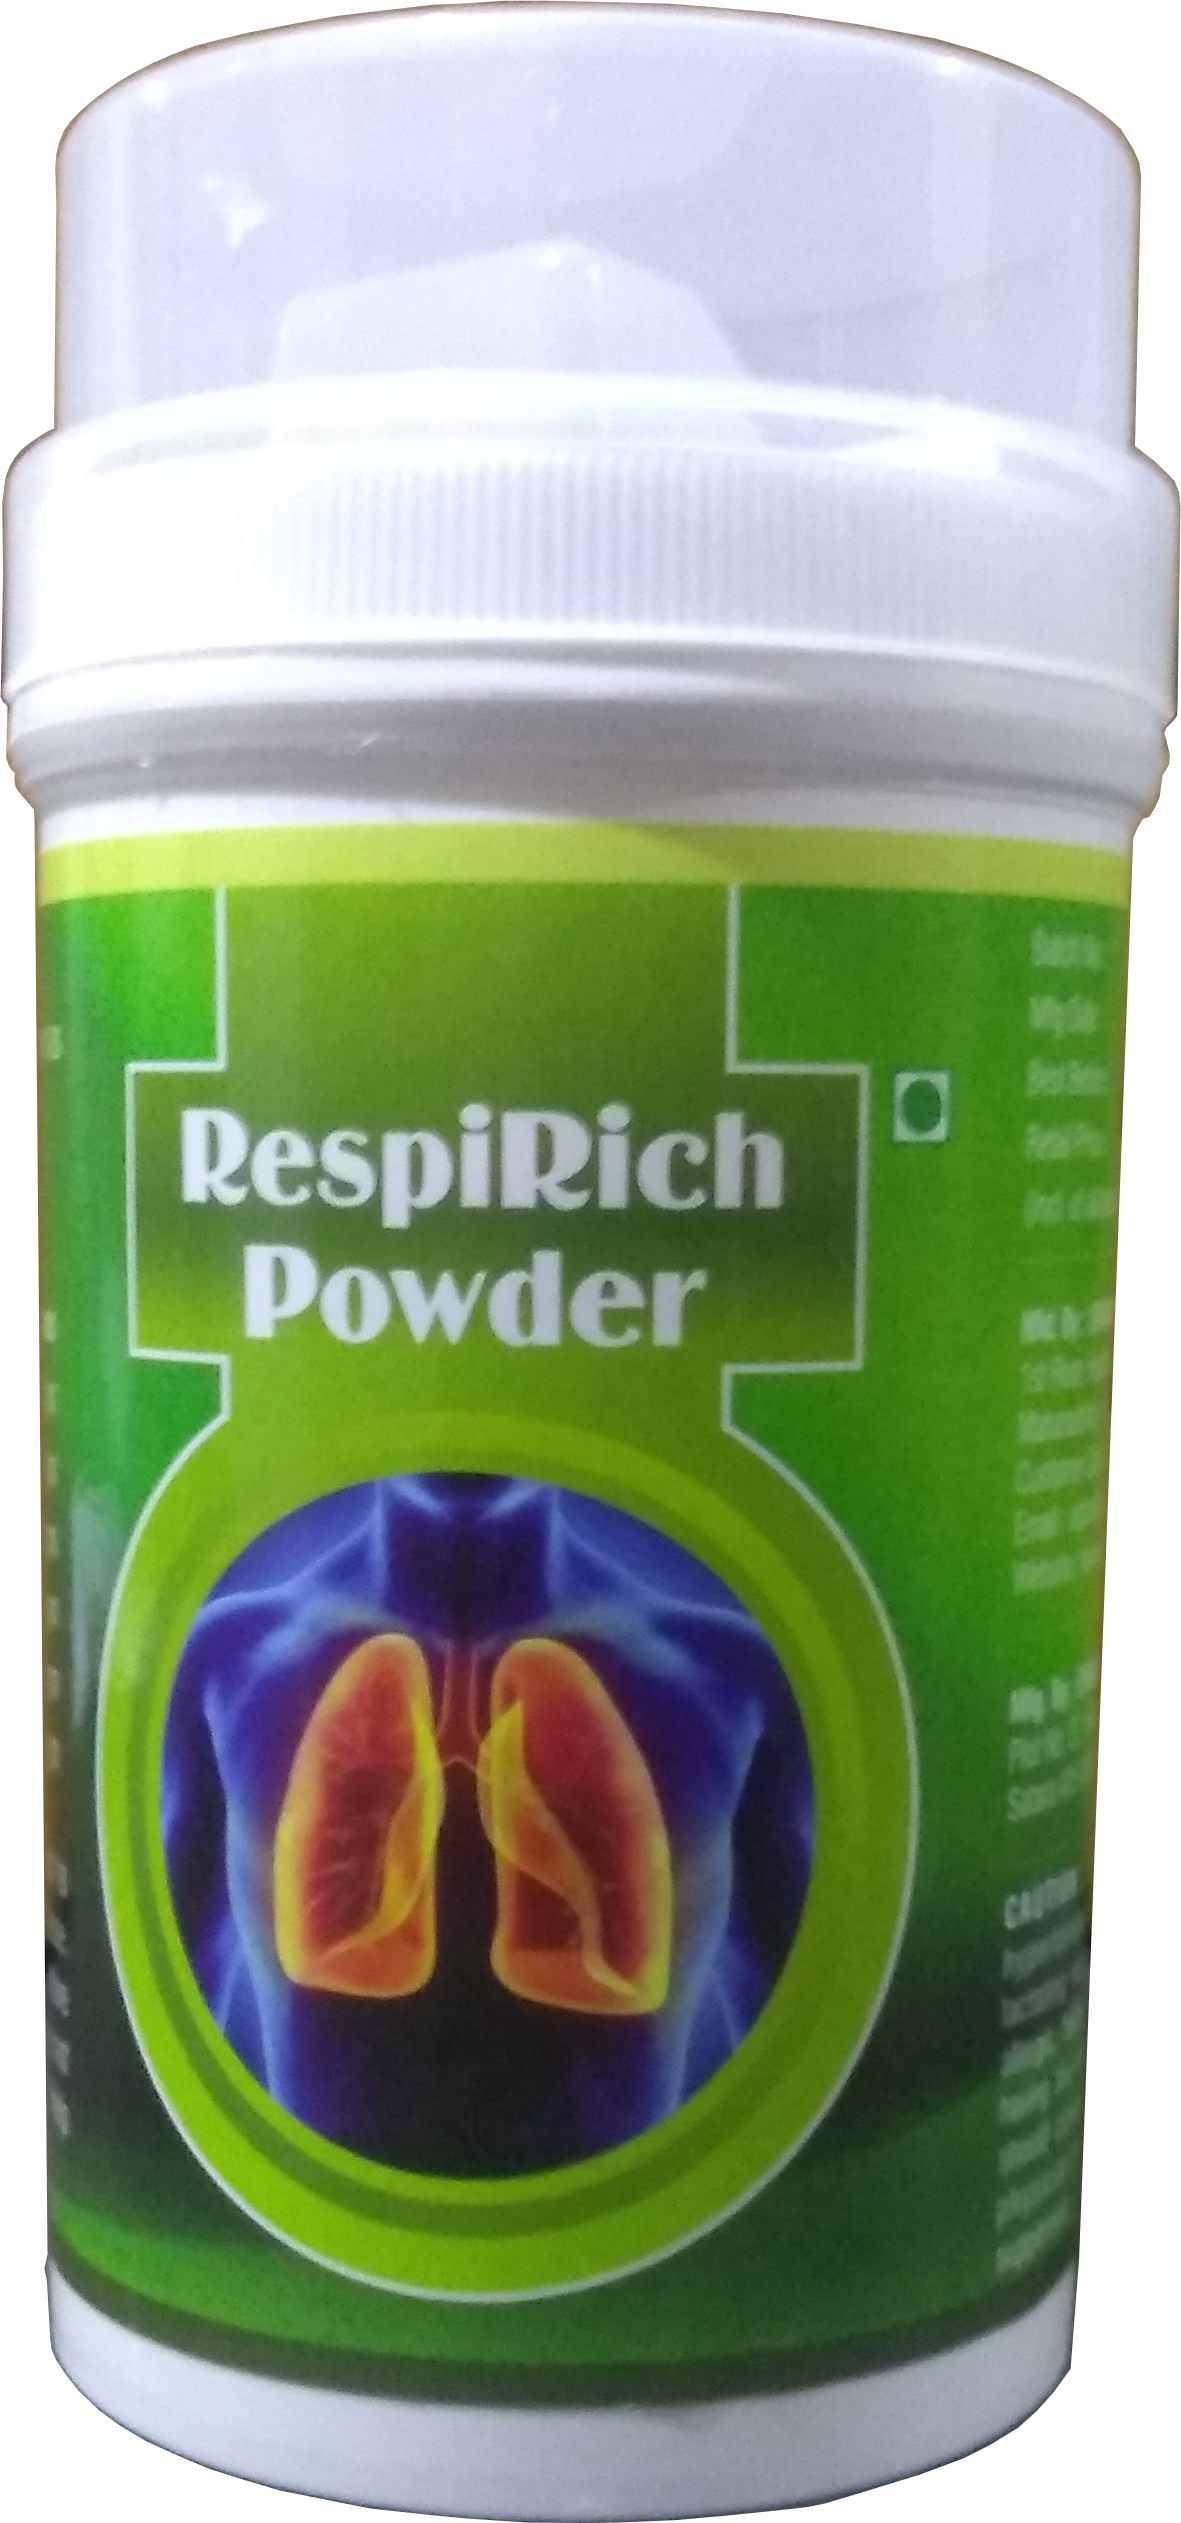 RespiRich Powder